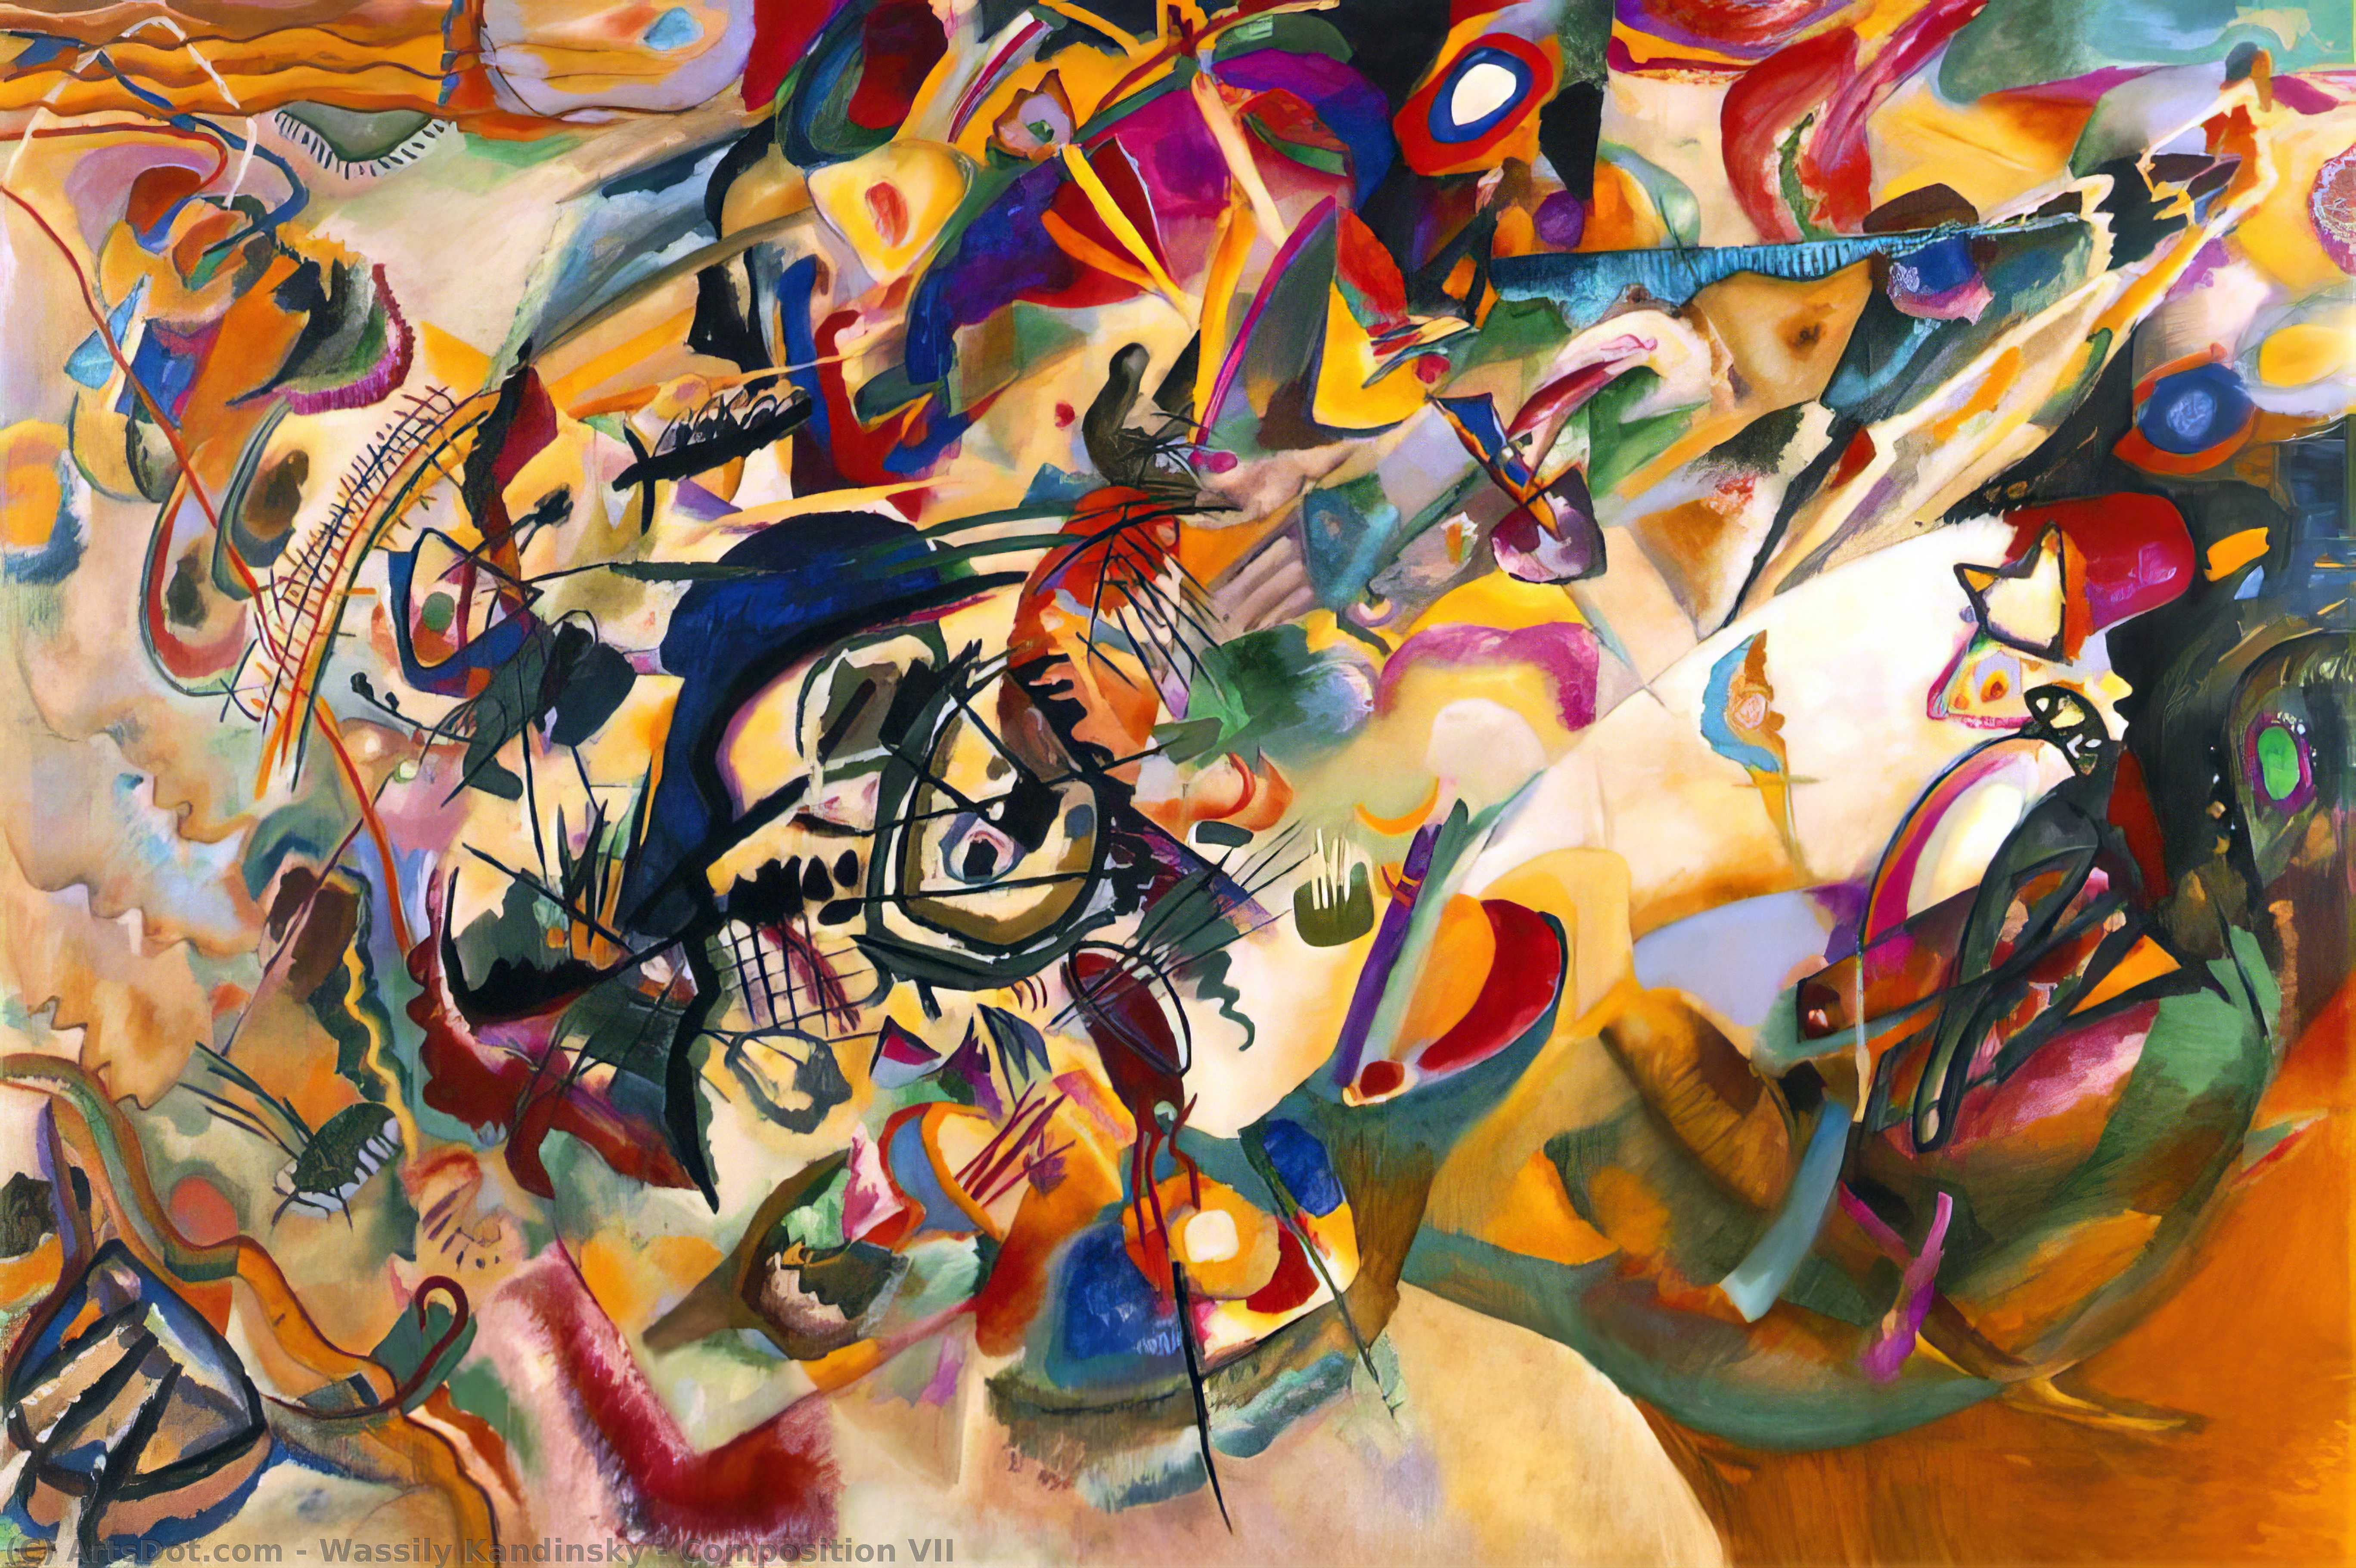 Compra Riproduzioni D'arte Del Museo Composizione VII, 1913 di Wassily Kandinsky (1866-1944, Russia) | ArtsDot.com